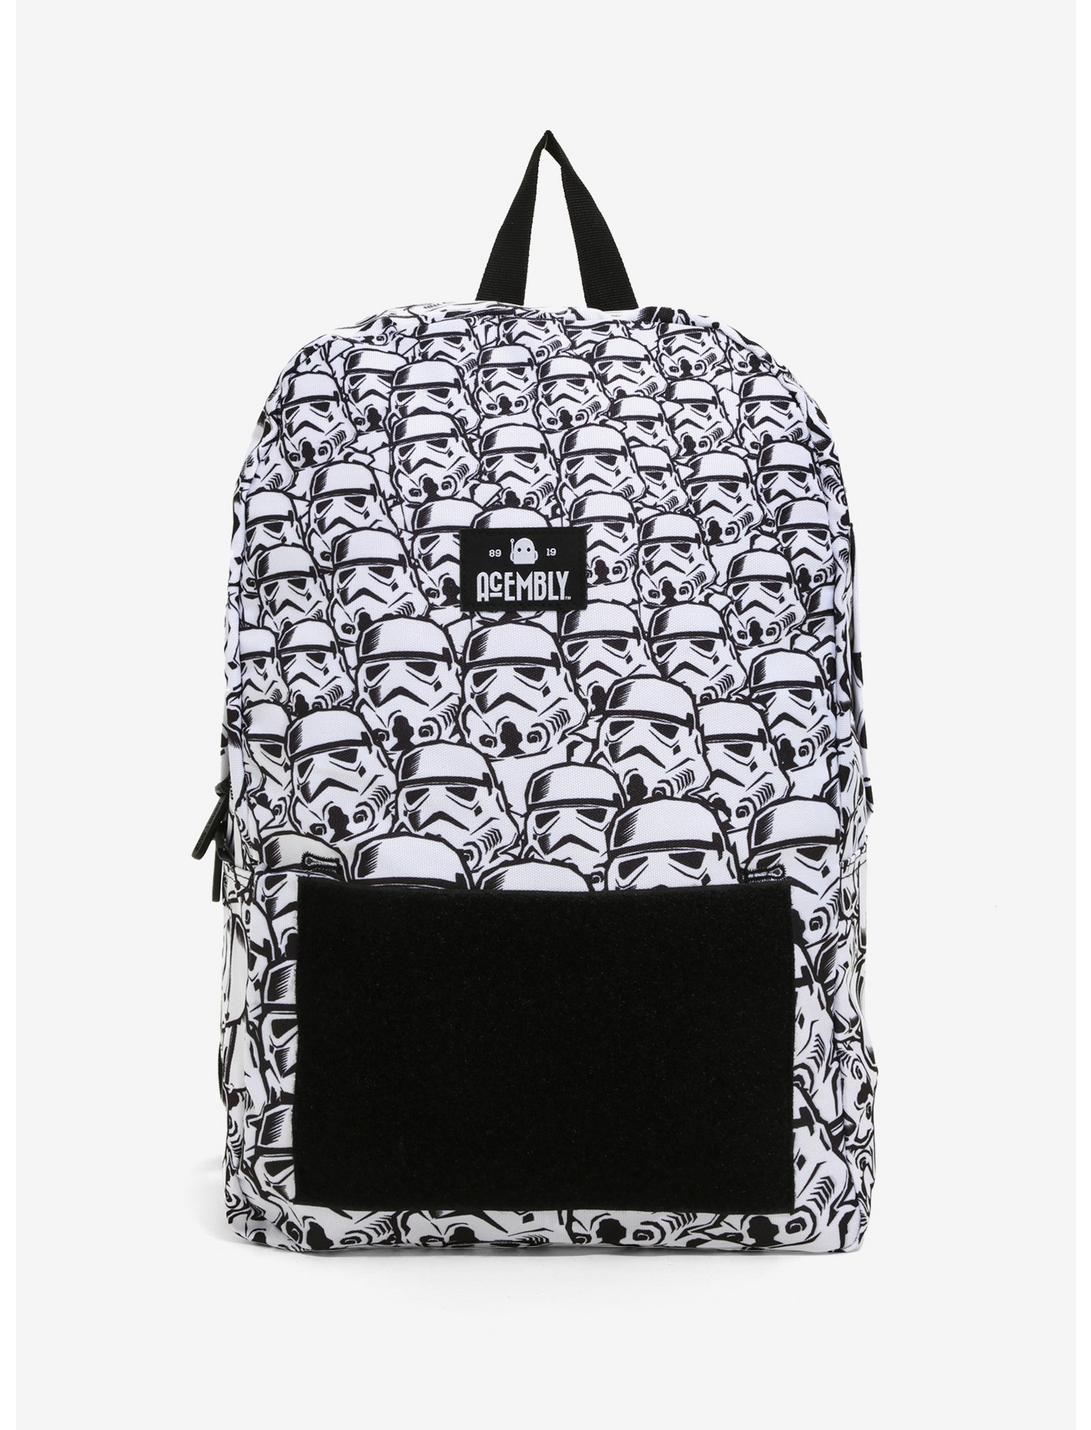 Acembly x Star Wars Stormtrooper Bag, , hi-res